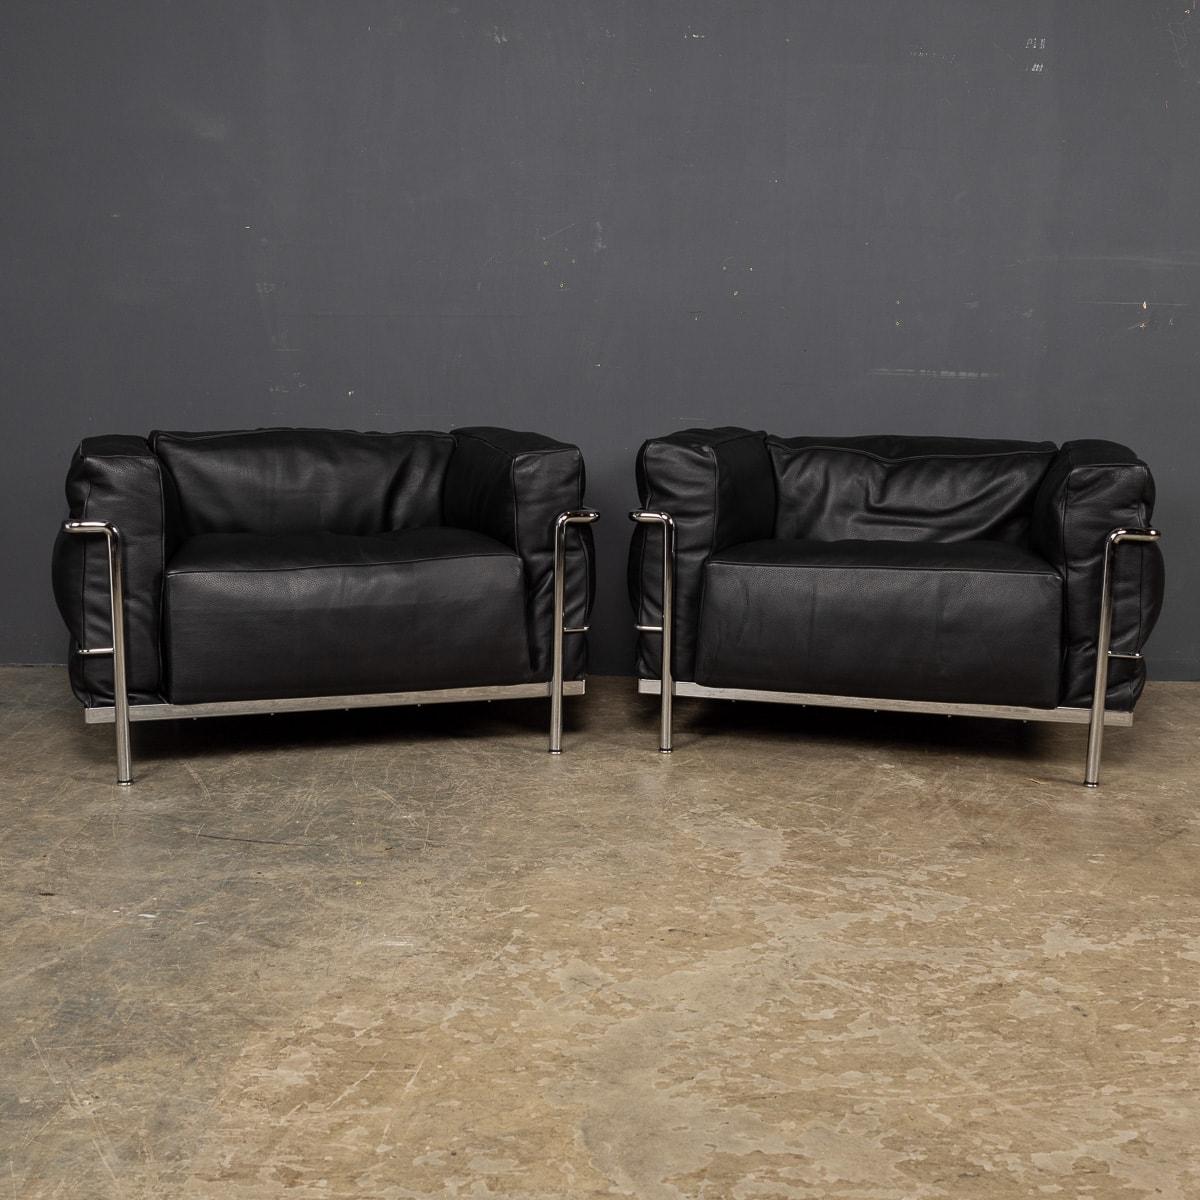 Paire de 3 fauteuils Fauteuil Grand Confort Grand Modèle Durable Cassina. Par Le Corbusier, dessiné par Pierre Jeanneret, Charlotte Perriand pour Cassina est un fauteuil iconique avec une structure en métal, disponible dans une belle finition